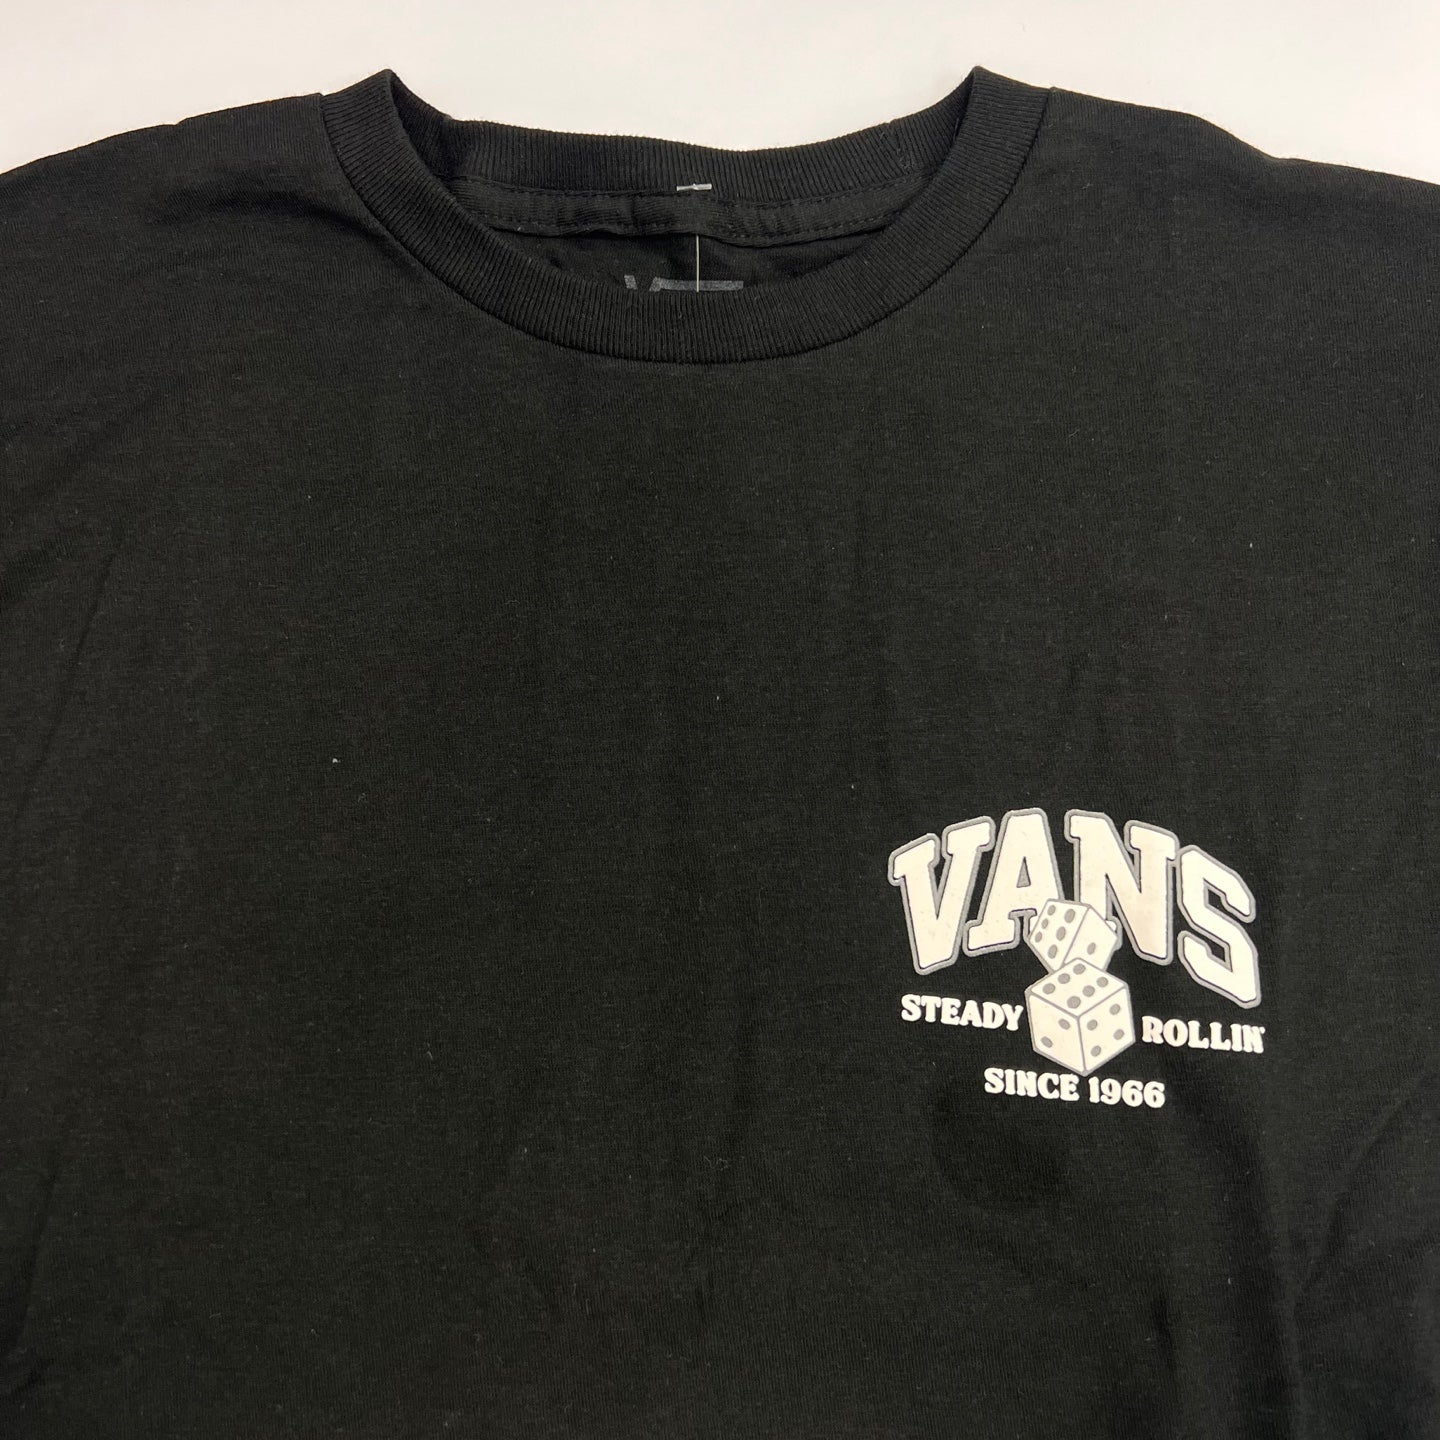 VANS Steady Rolling Old Skool T-Shirt